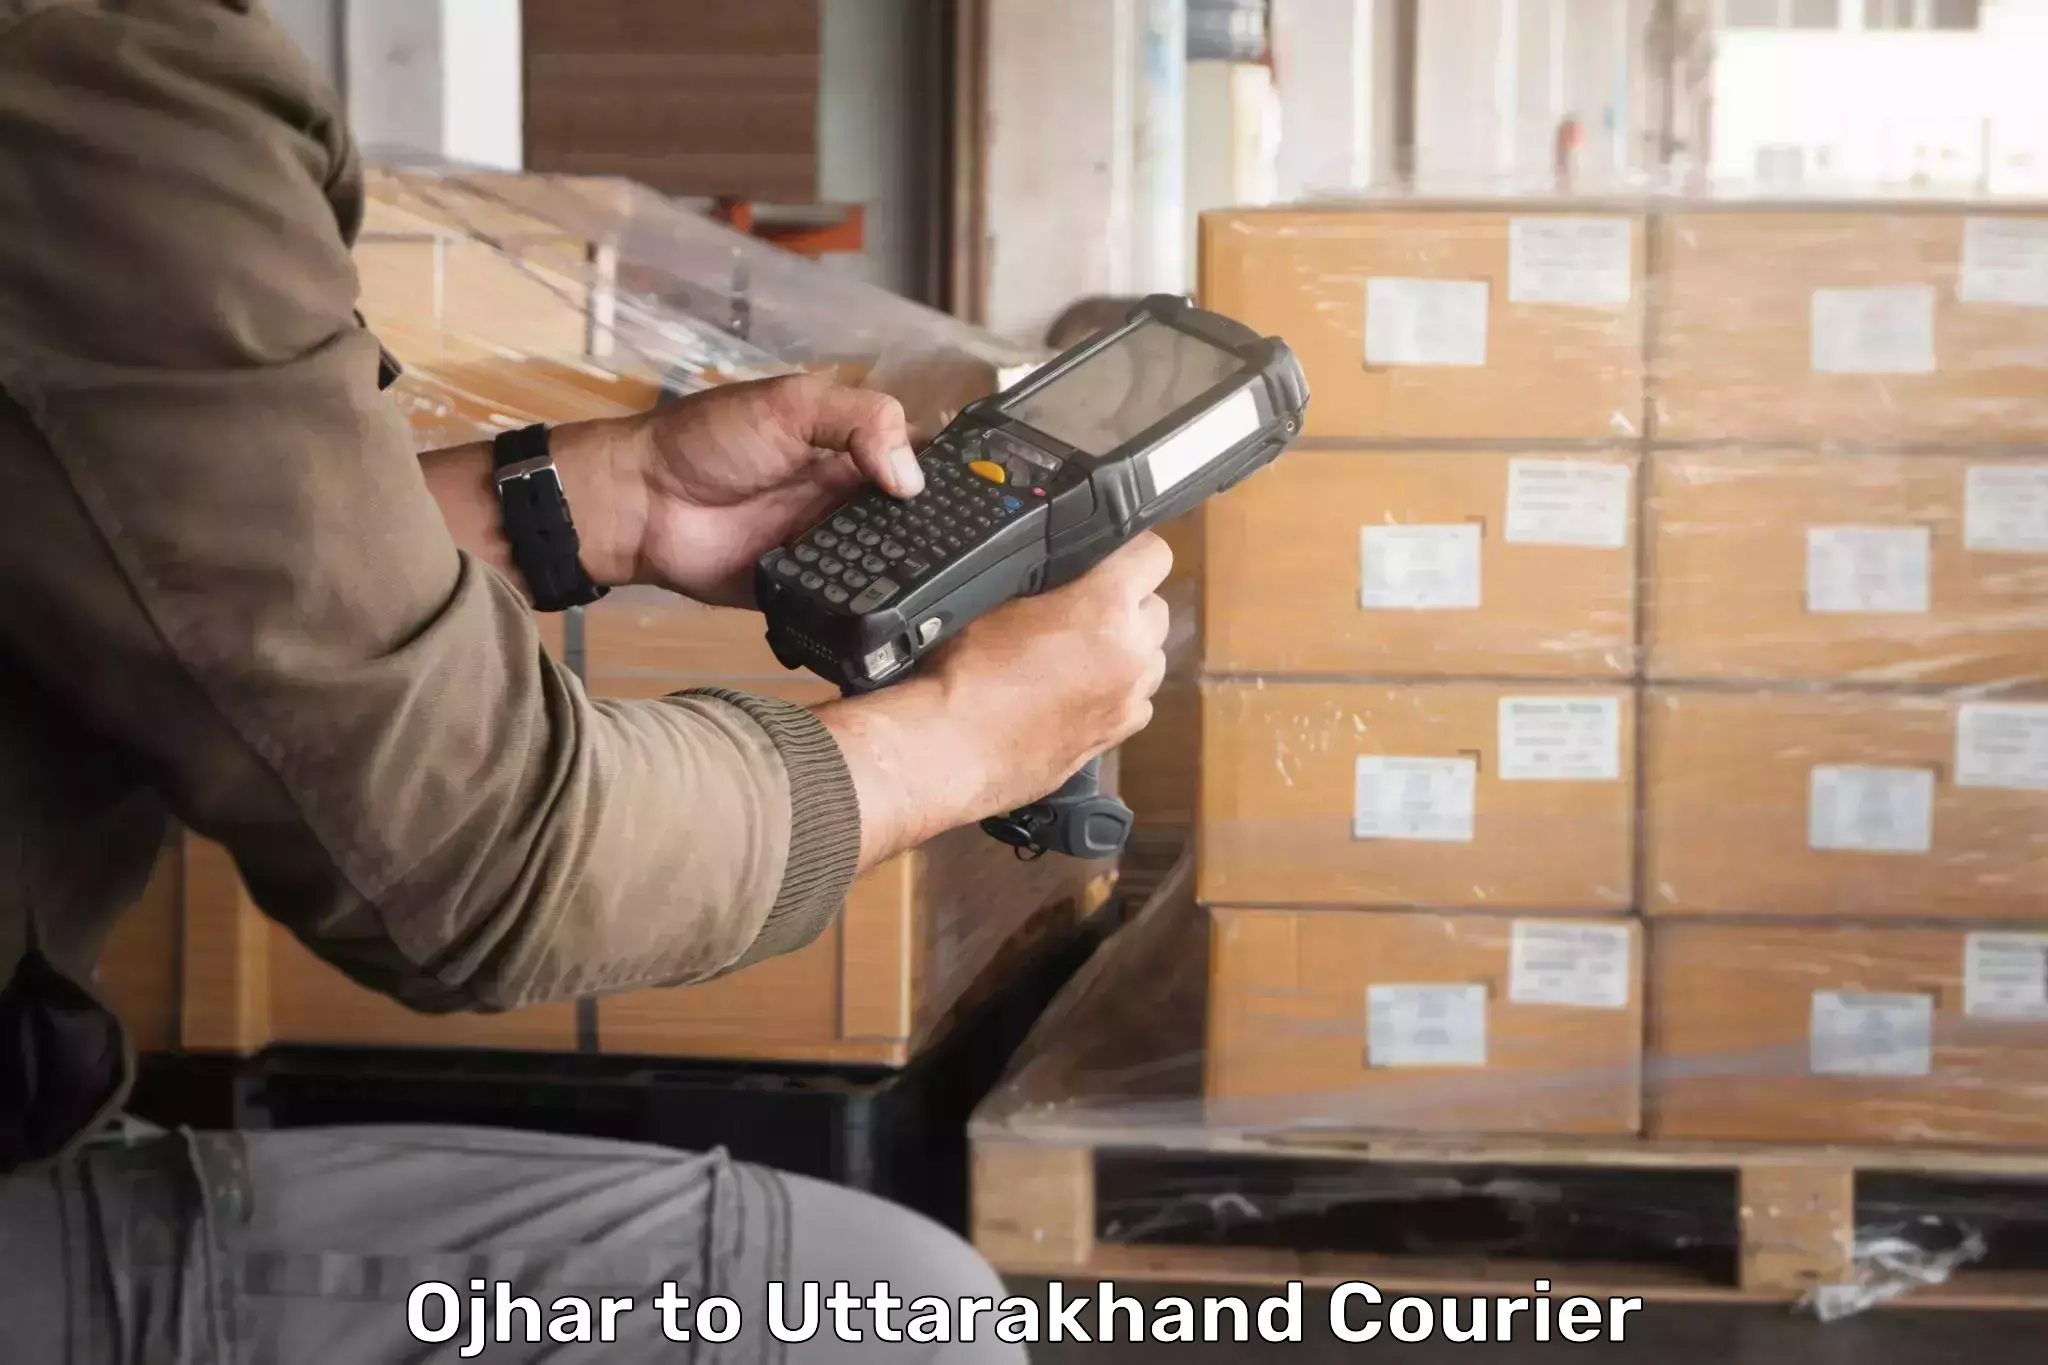 Specialized shipment handling in Ojhar to Uttarakhand